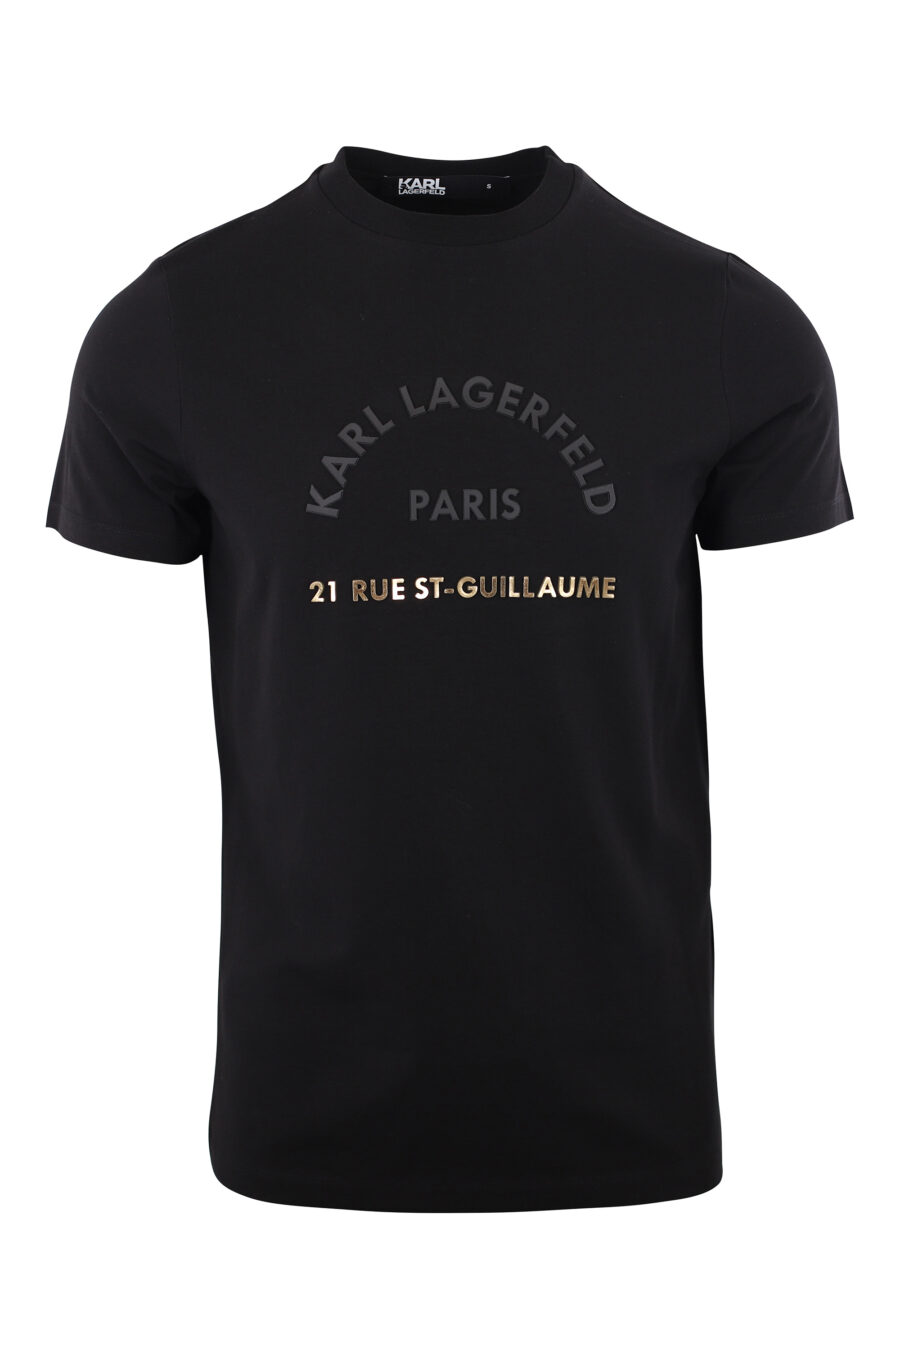 Schwarzes T-Shirt mit goldenem Gummilogo "rue st-guillaume" - IMG 2022